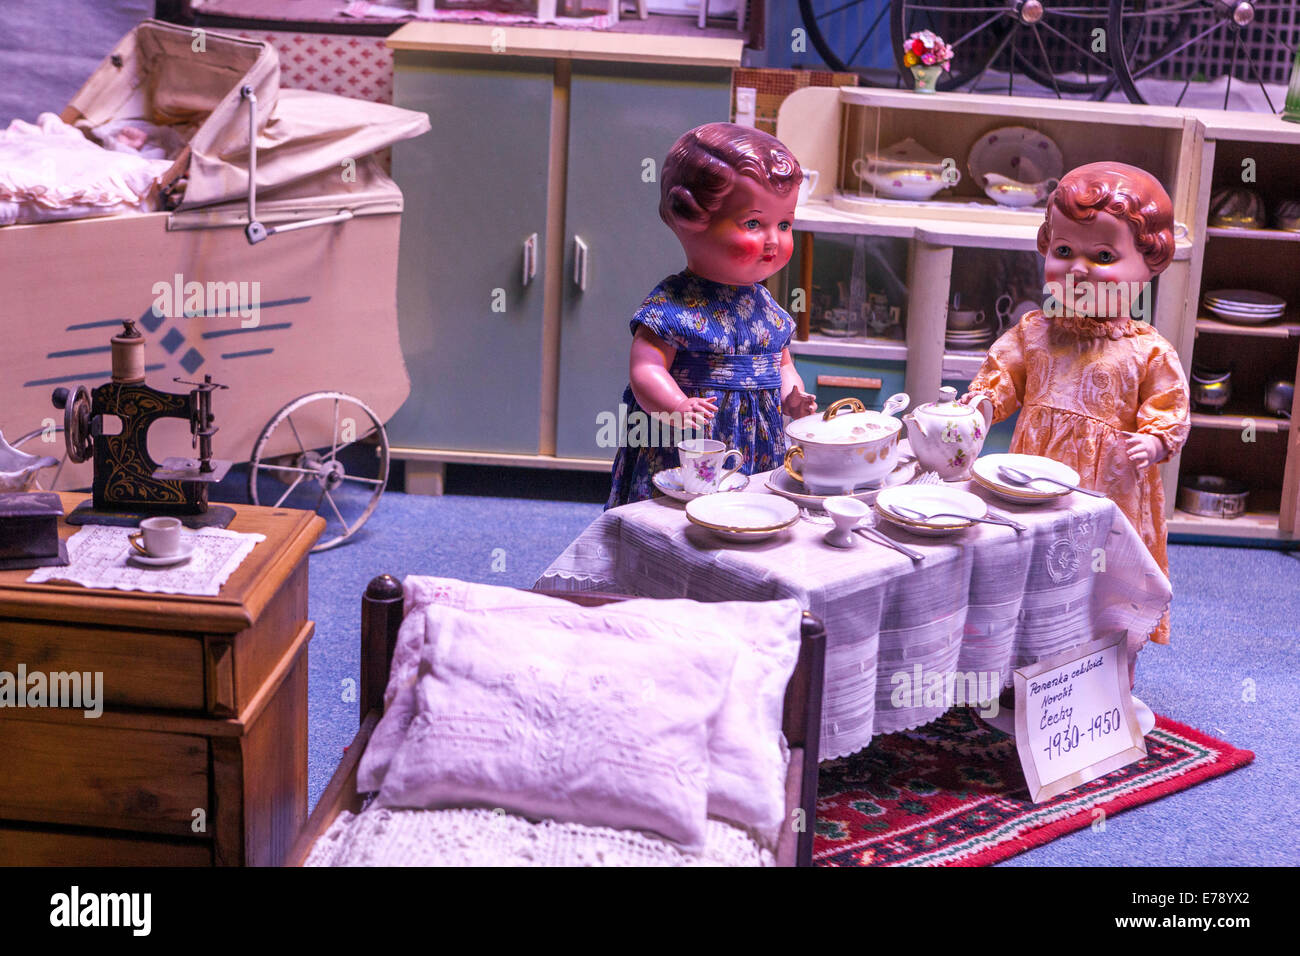 Alte Puppenhaus Ausstellung im Spielzeugmuseum in Prag Tschechische  Republik Stockfotografie - Alamy